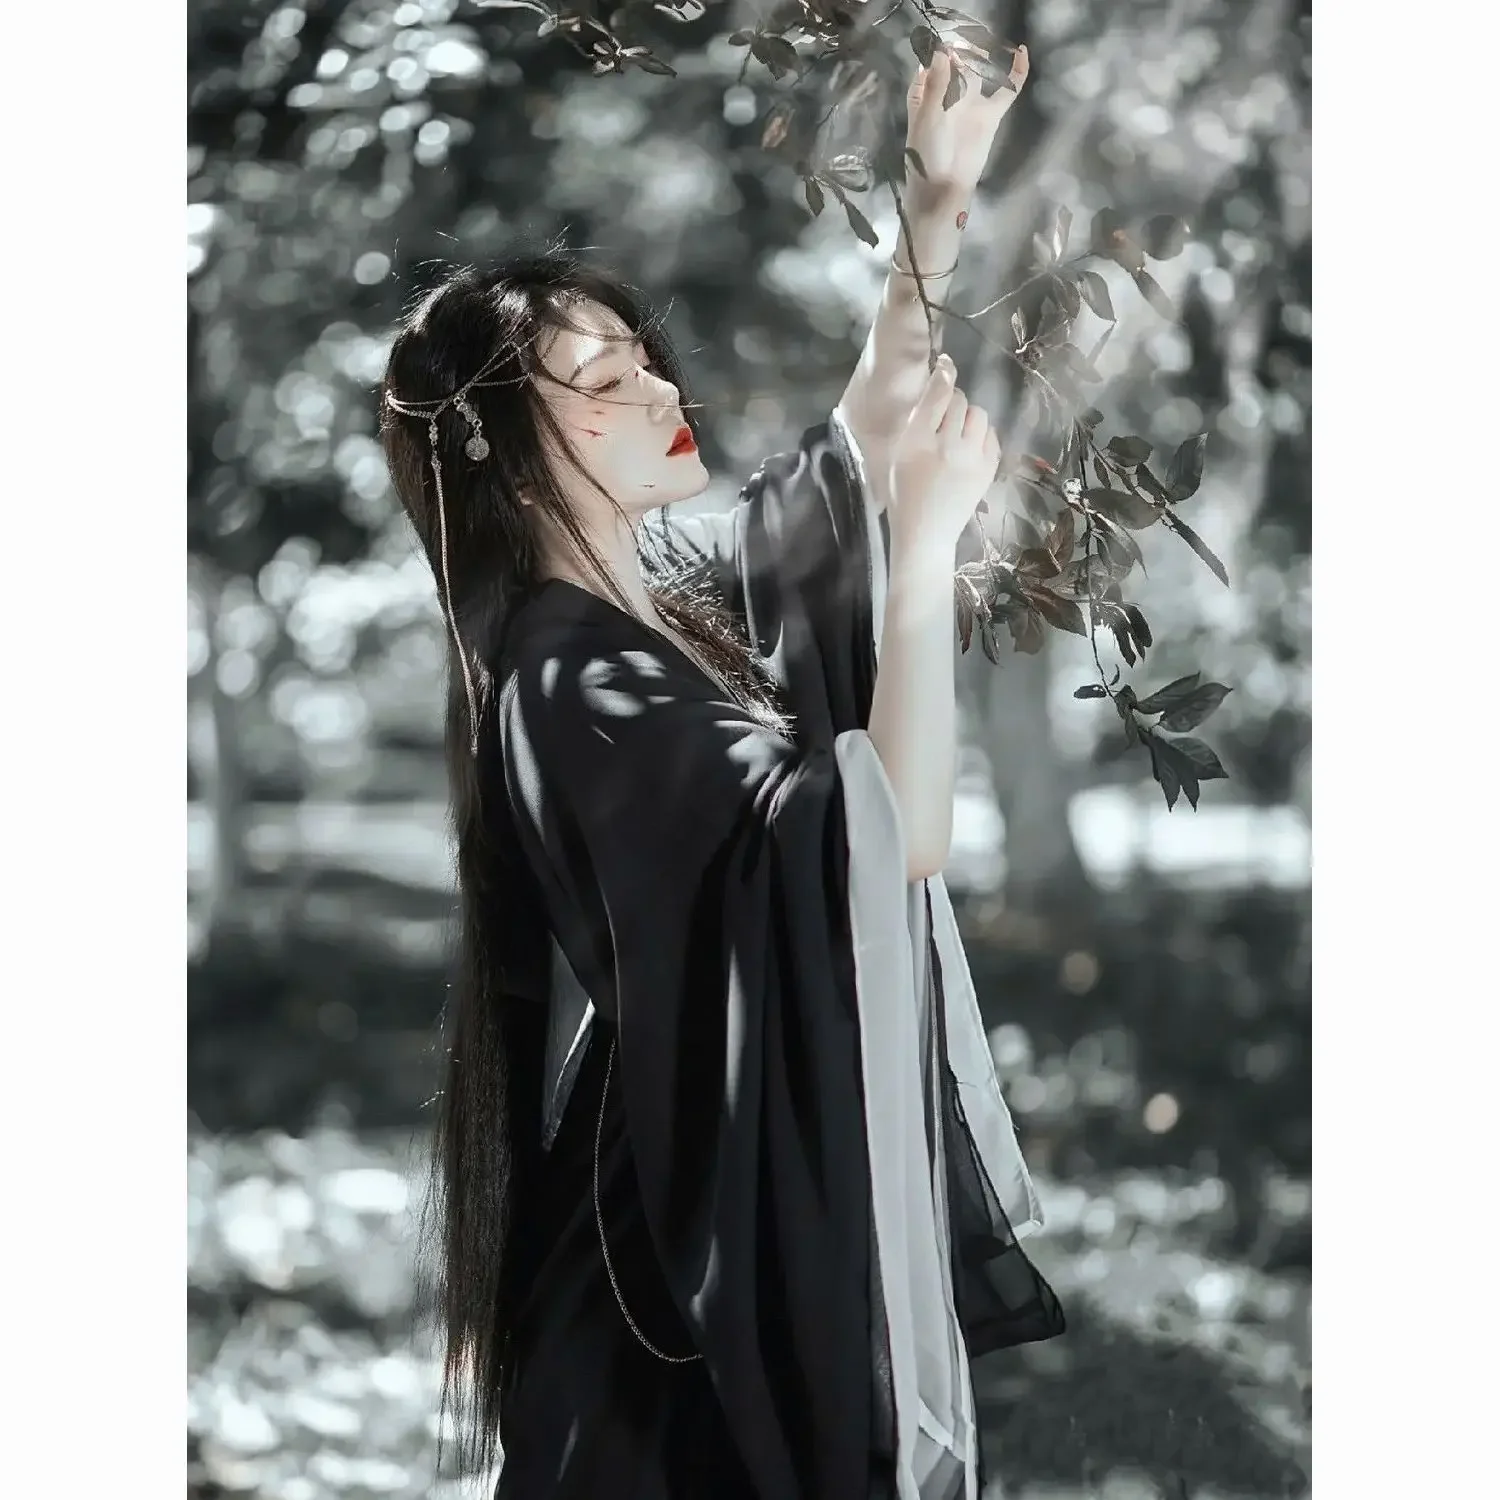 Женское платье Hanfu, Древнекитайский Традиционный комплект Hanfu, женский костюм для косплея, Летняя черная куртка Hanfu с белым платьем, комплекты